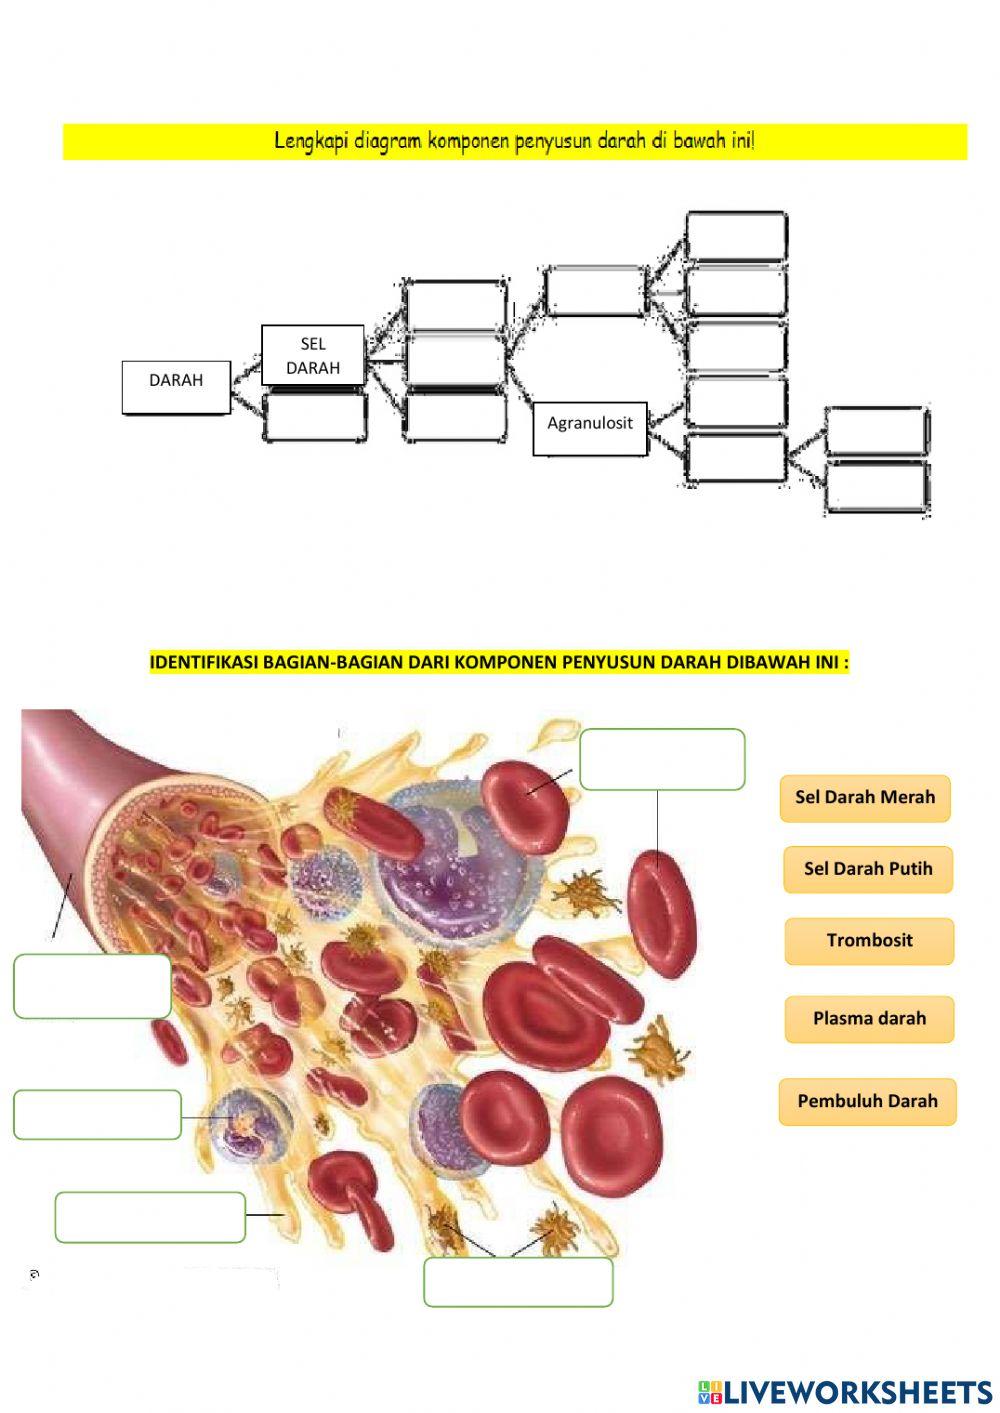 LKPD Komponen penyusun darah